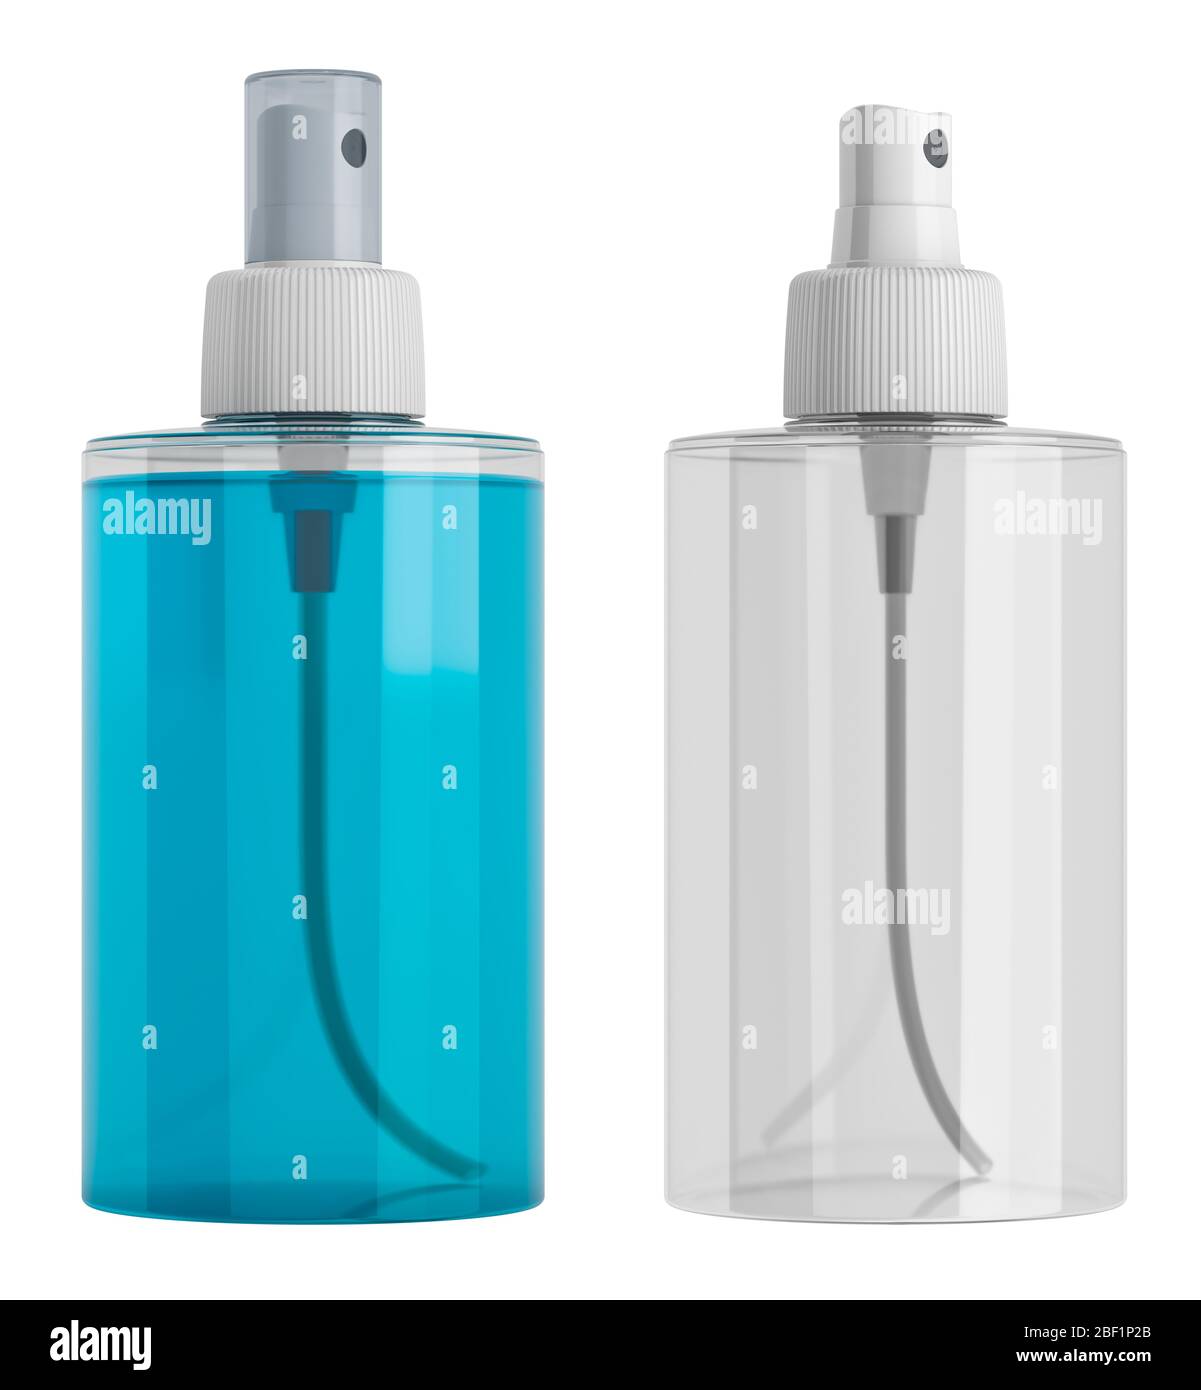 Flacone trasparente spray in plastica con liquido blu e flacone